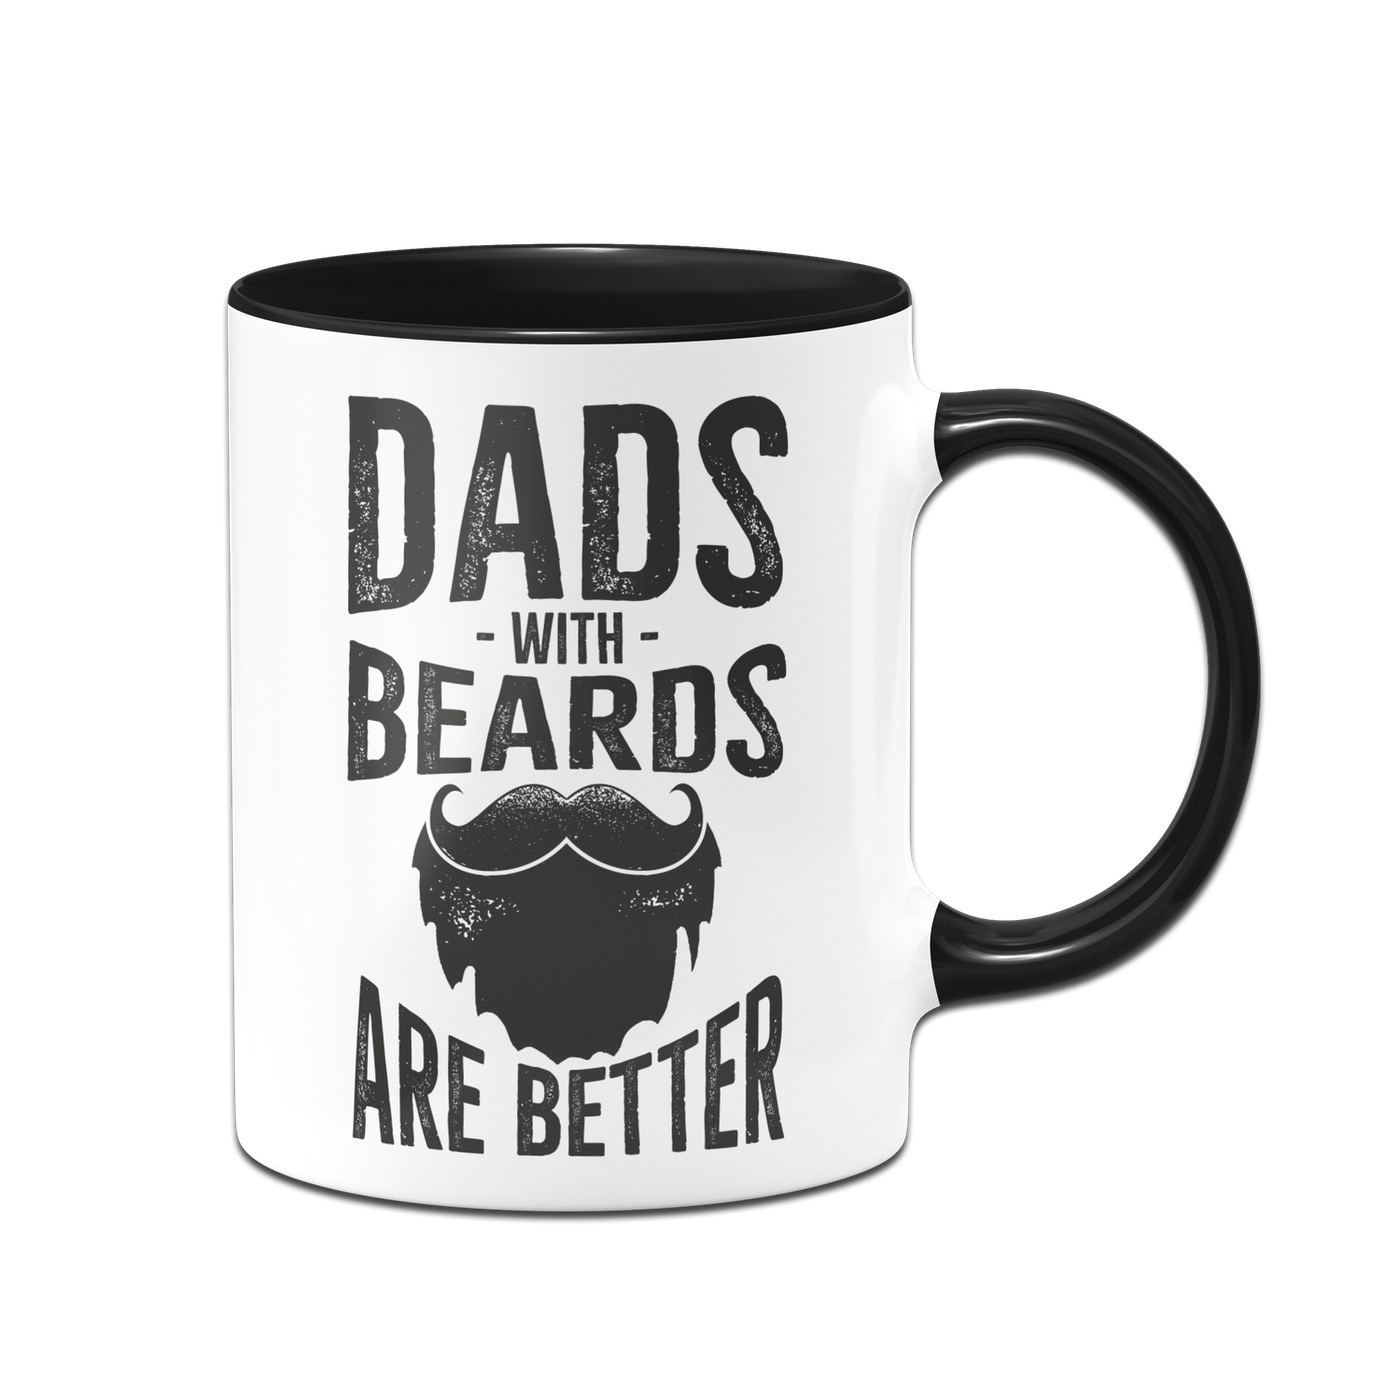 Bild: Tasse - Dads with Beards are better Geschenkidee